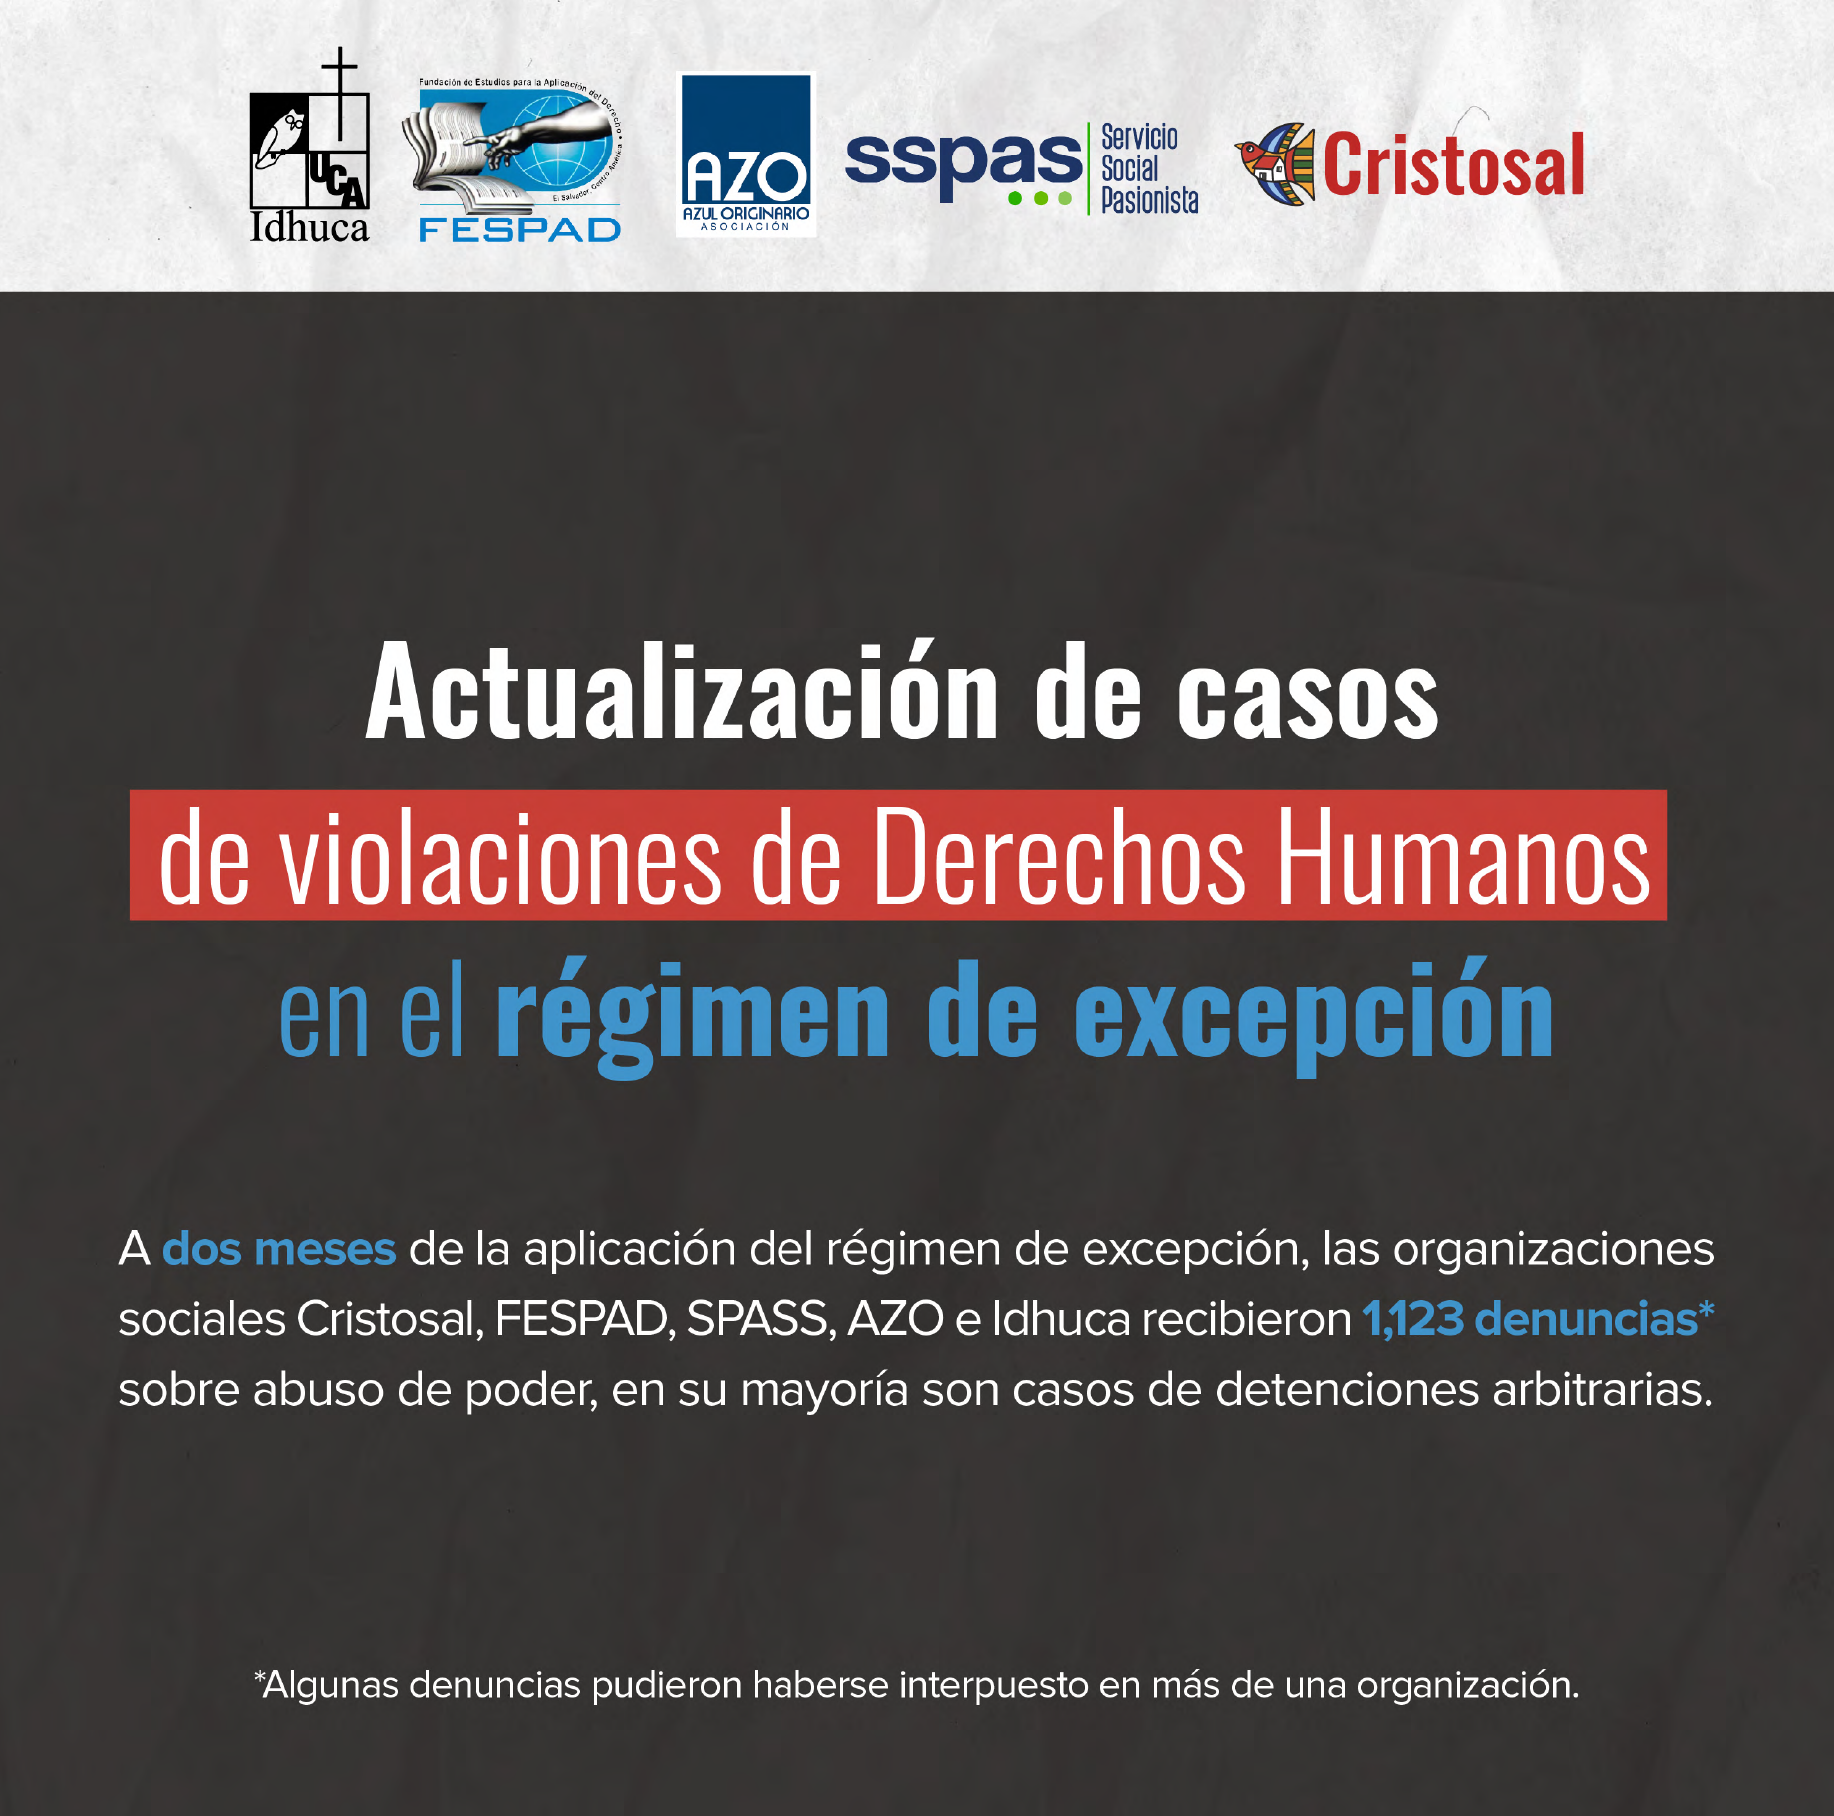 Actualización de casos de violaciones de derechos humanos en el régimen de excepción.